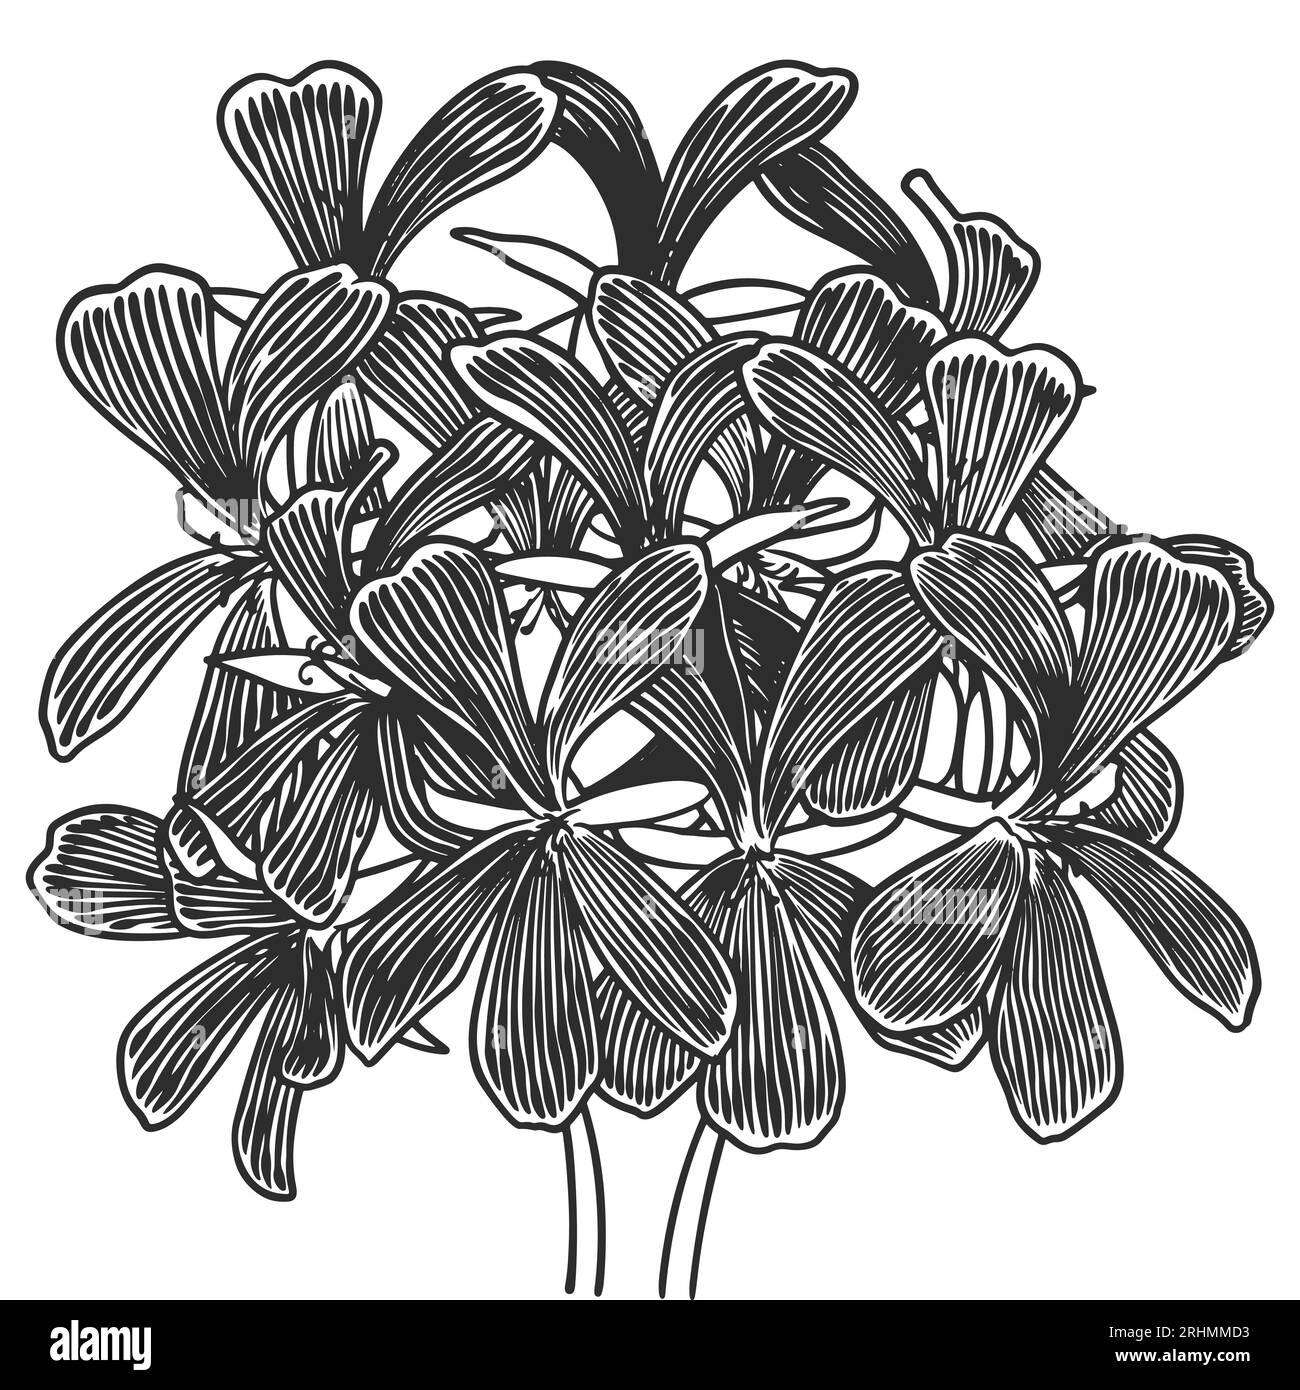 Piante oleose essenziali disegnate a mano che disegnano geranio o pelargonium graveolens isolati su fondo bianco. Illustrazione Vettoriale